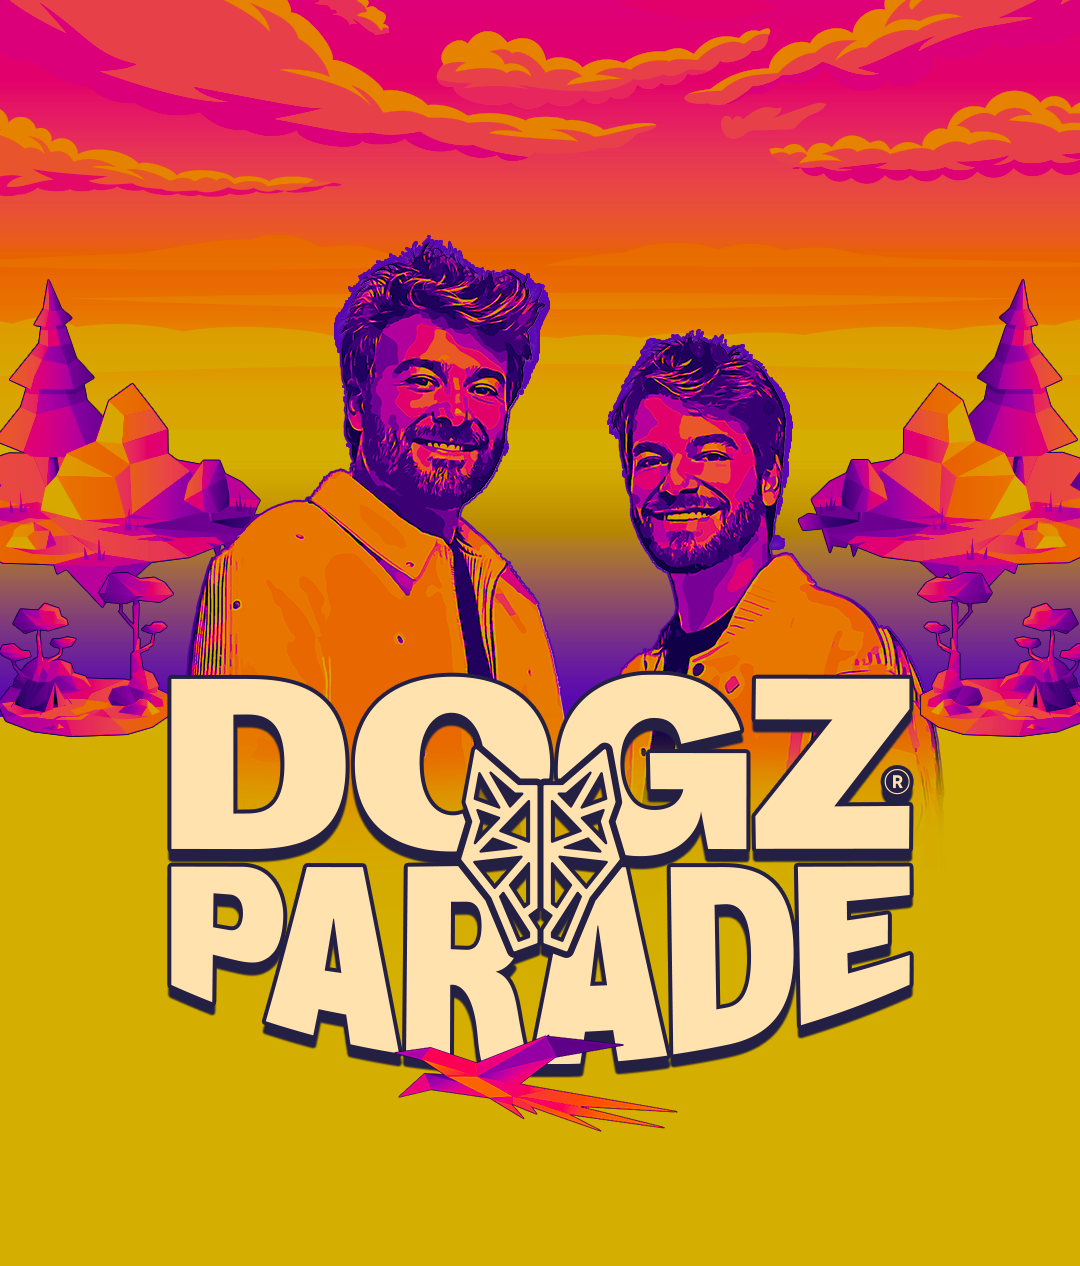 Mistério revelado: Dogz Parade é a nova festa autoral da dupla Dubdogz